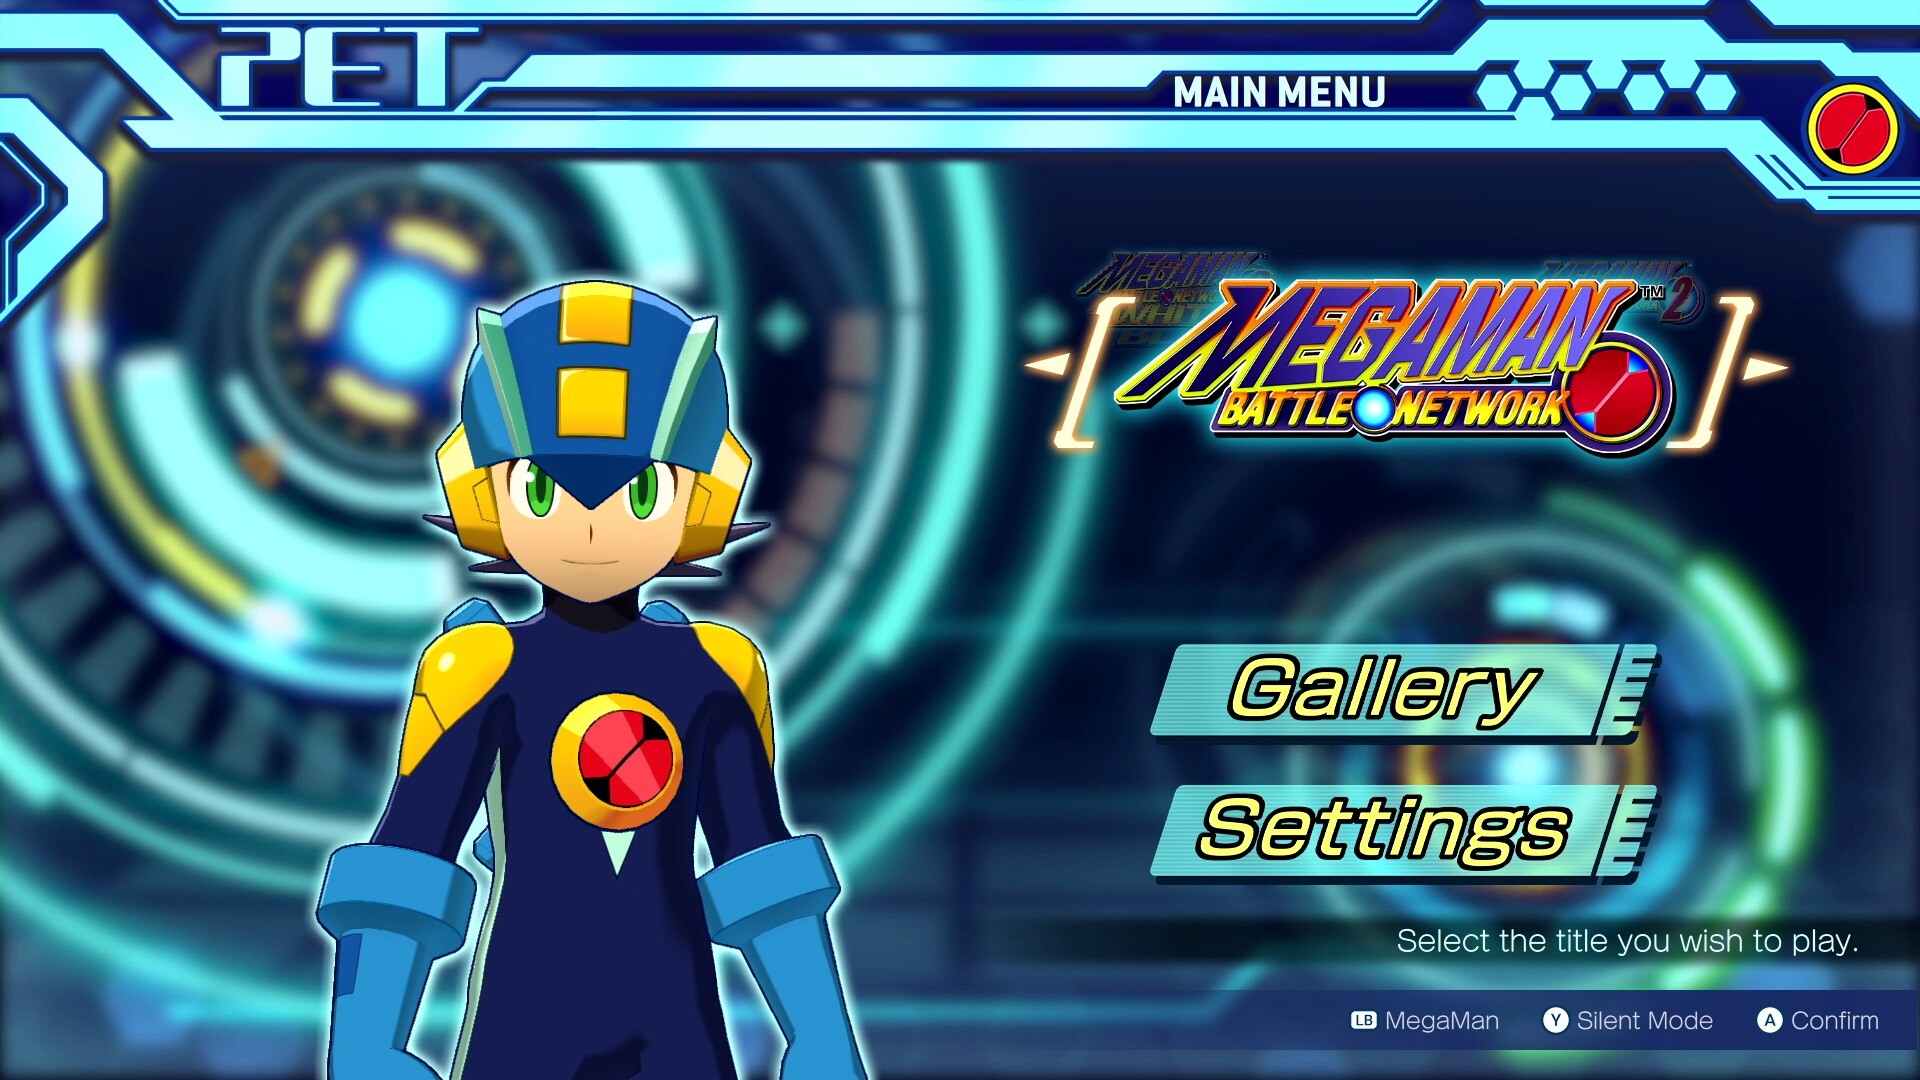 Mega Man Battle Network Legacy Collection Vol. 2 Trainer - FLiNG